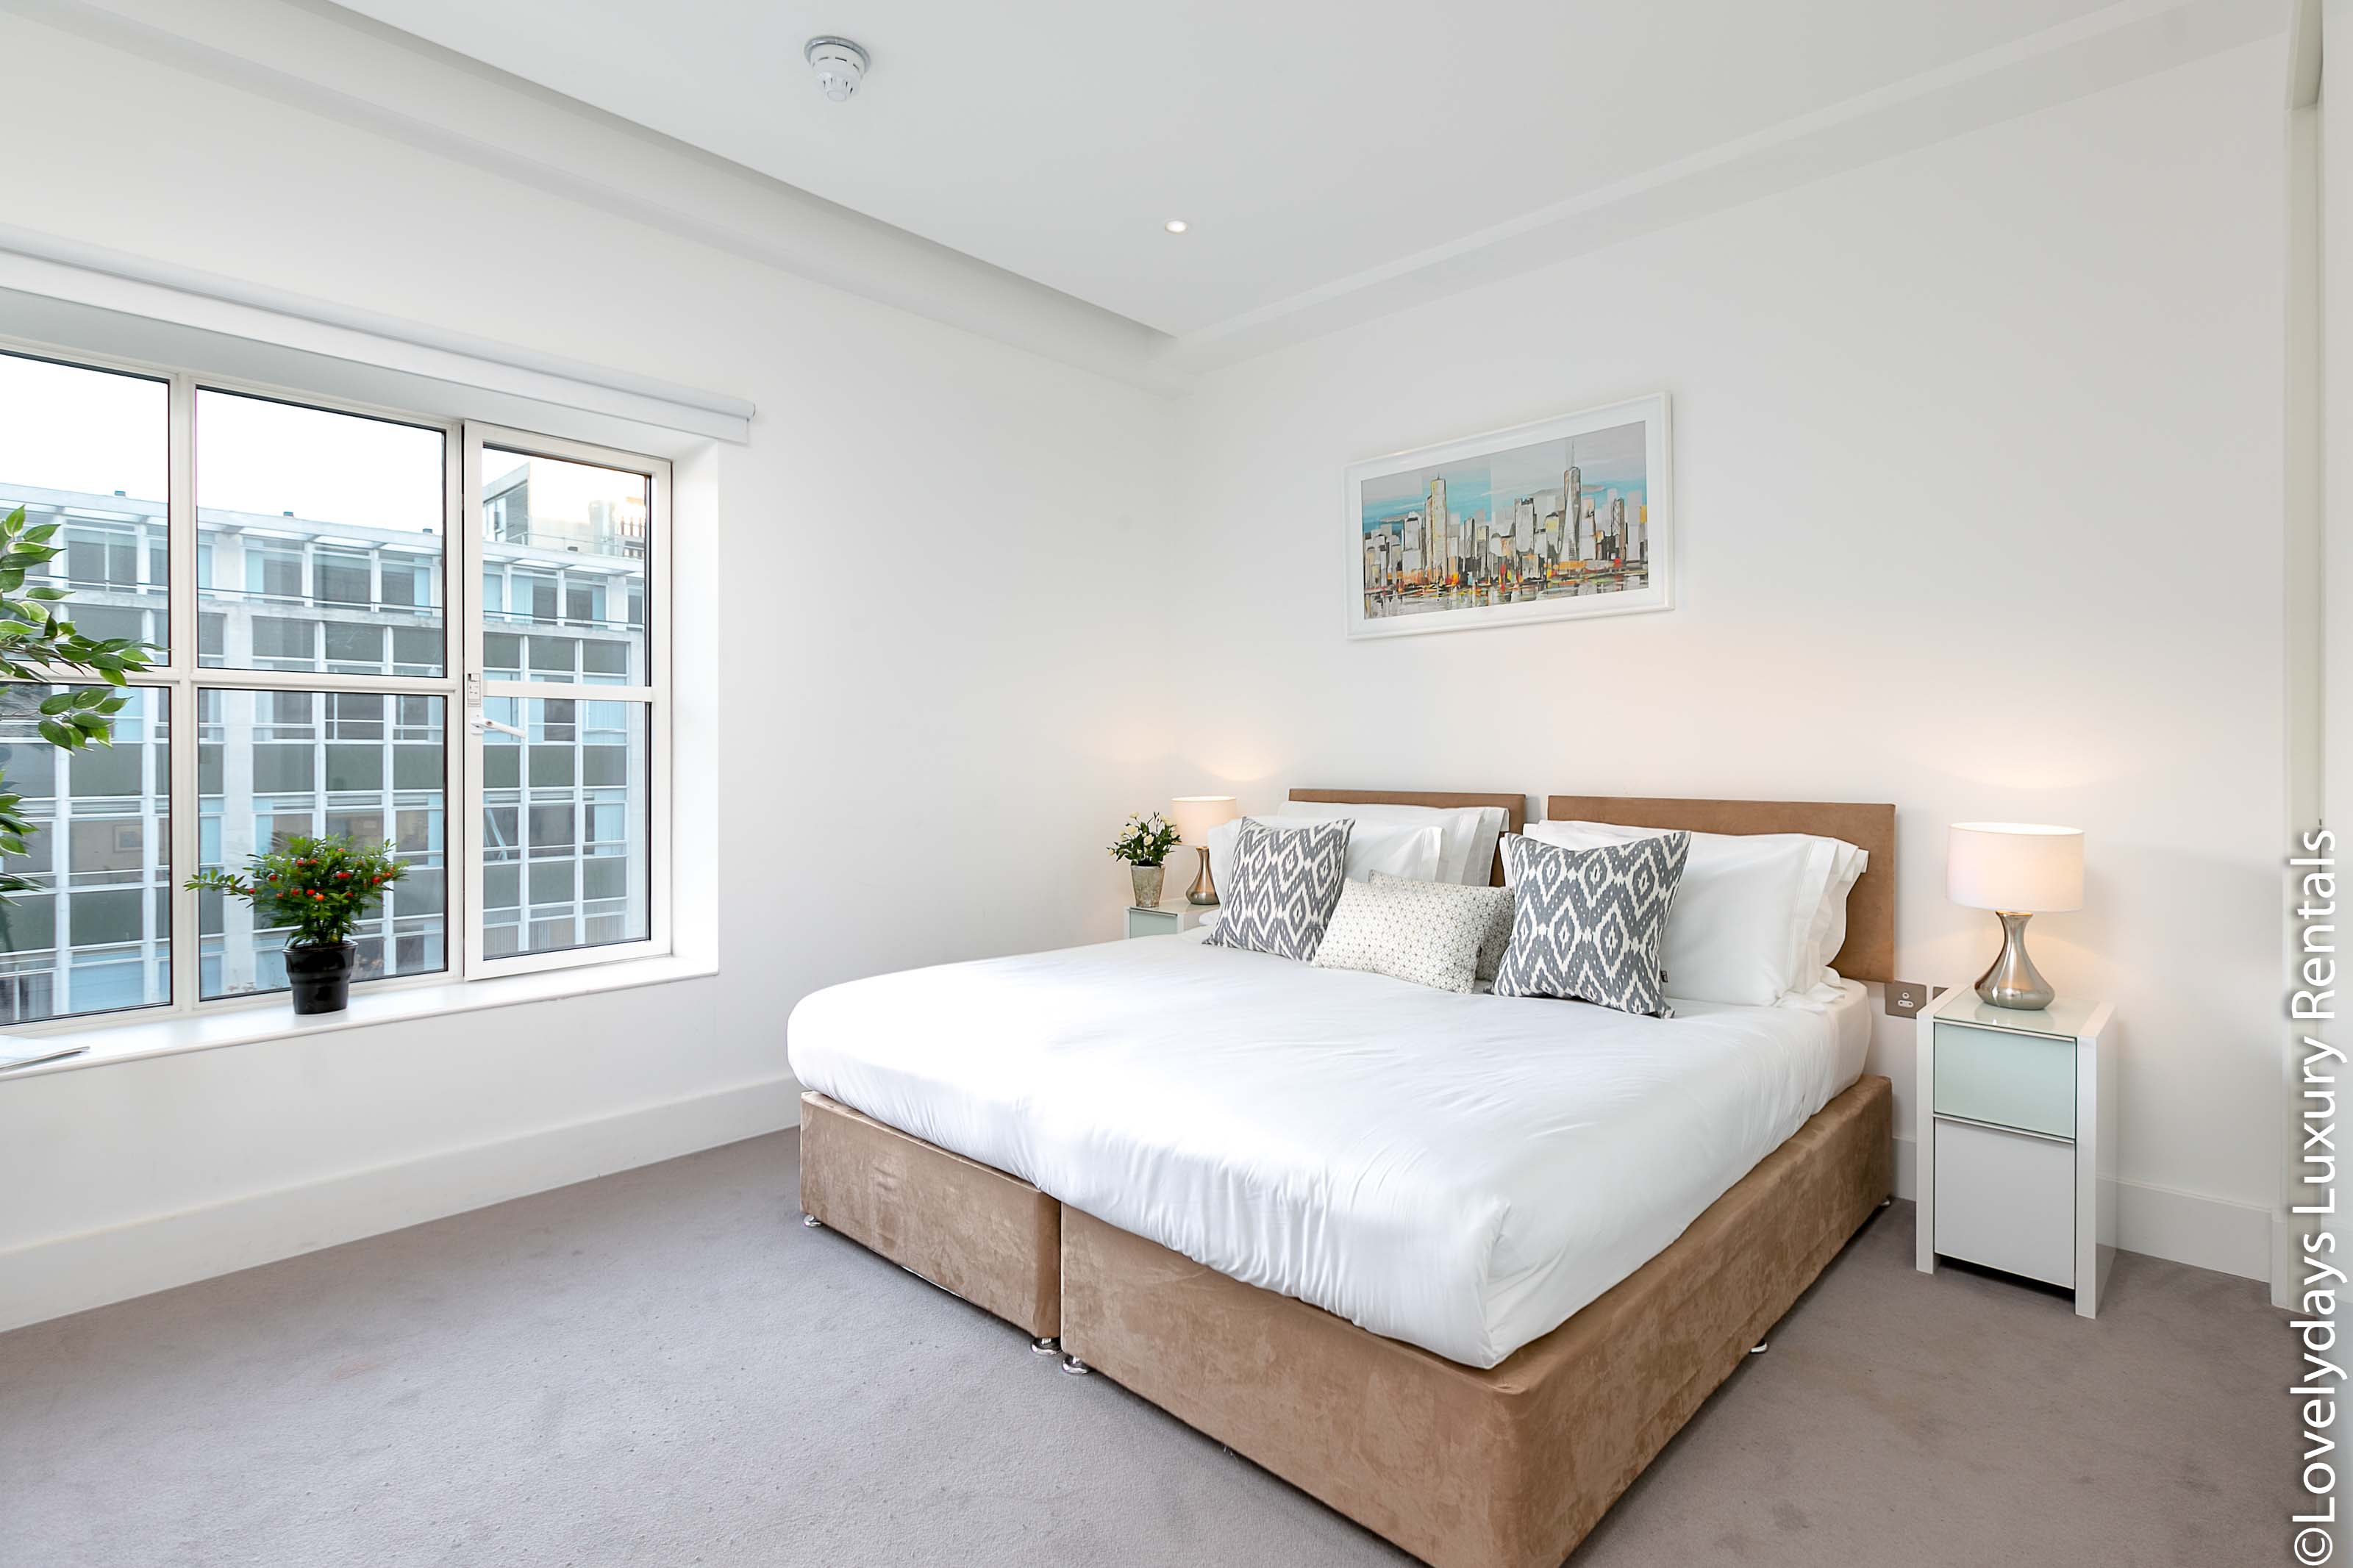 Lovelydays luxury service apartment rental - London - Covent Garden - Prince's House 603 - Lovelysuite - 2 bedrooms - 2 bathrooms - King bed - f8e213f9336b - Lovelydays